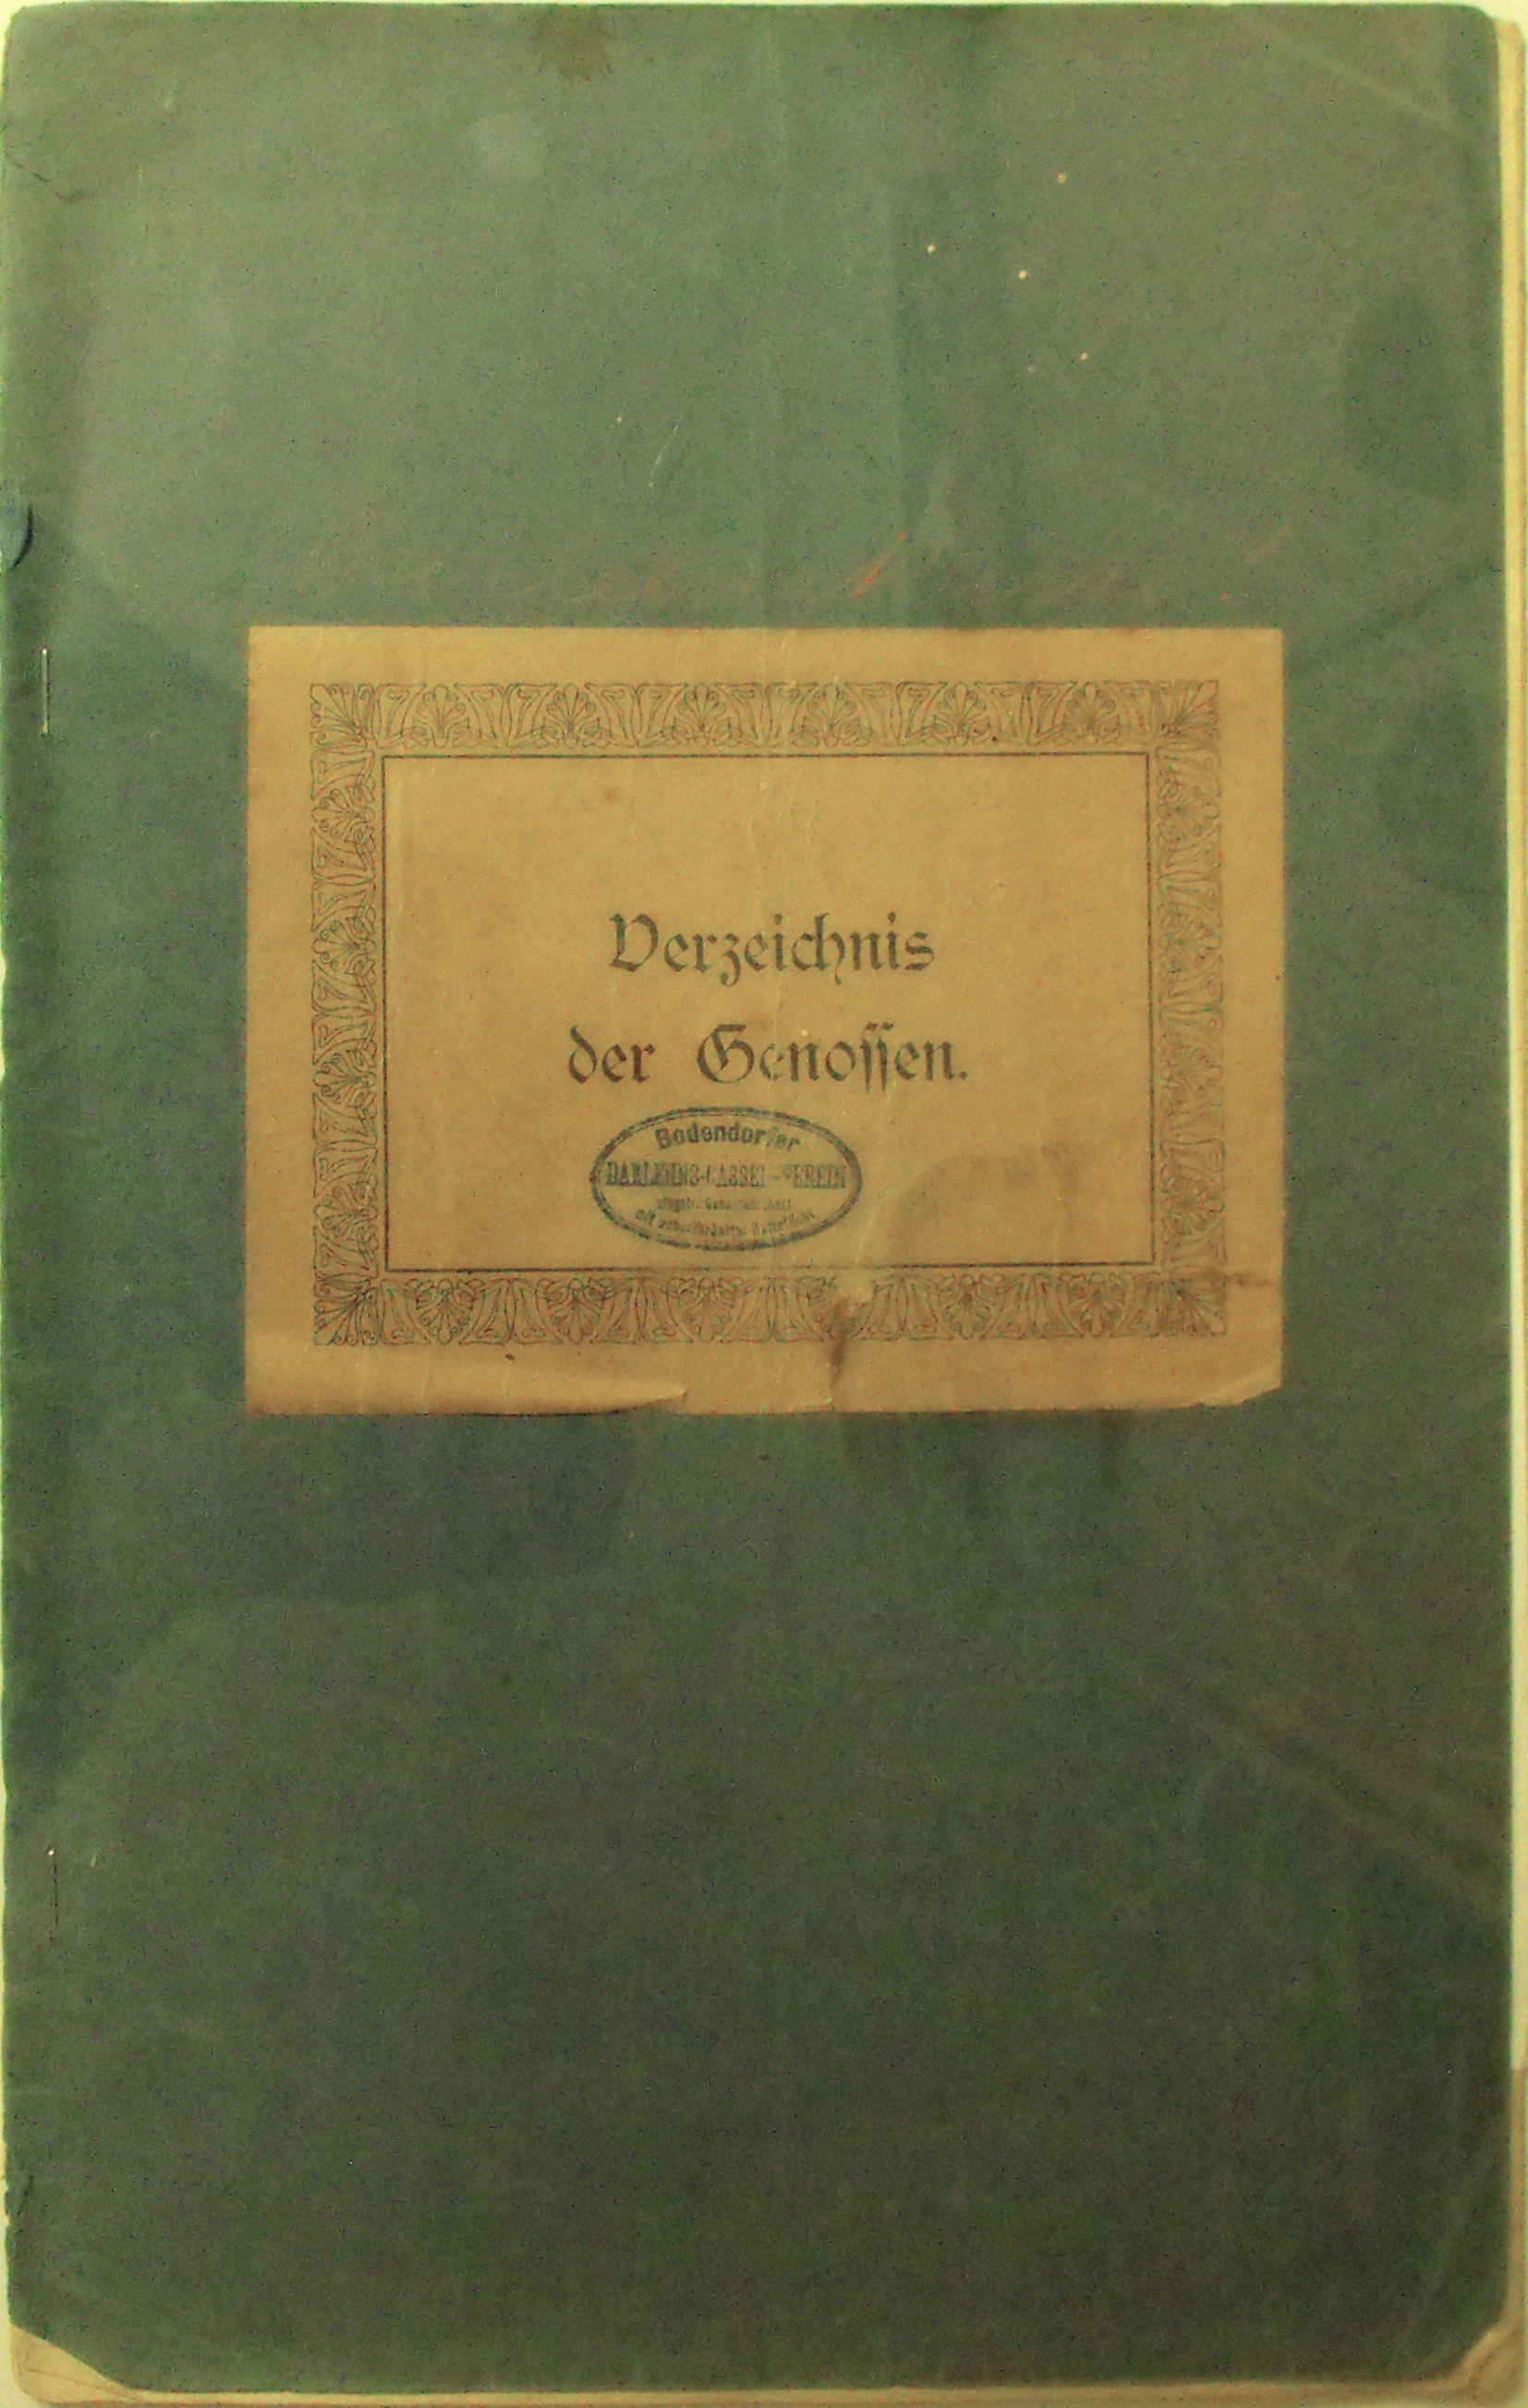 Verzeichnis der Genossen "Bodendorfer Darlehnkassen Verein" (Heimatmuseum und -Archiv Bad Bodendorf CC BY-NC-SA)